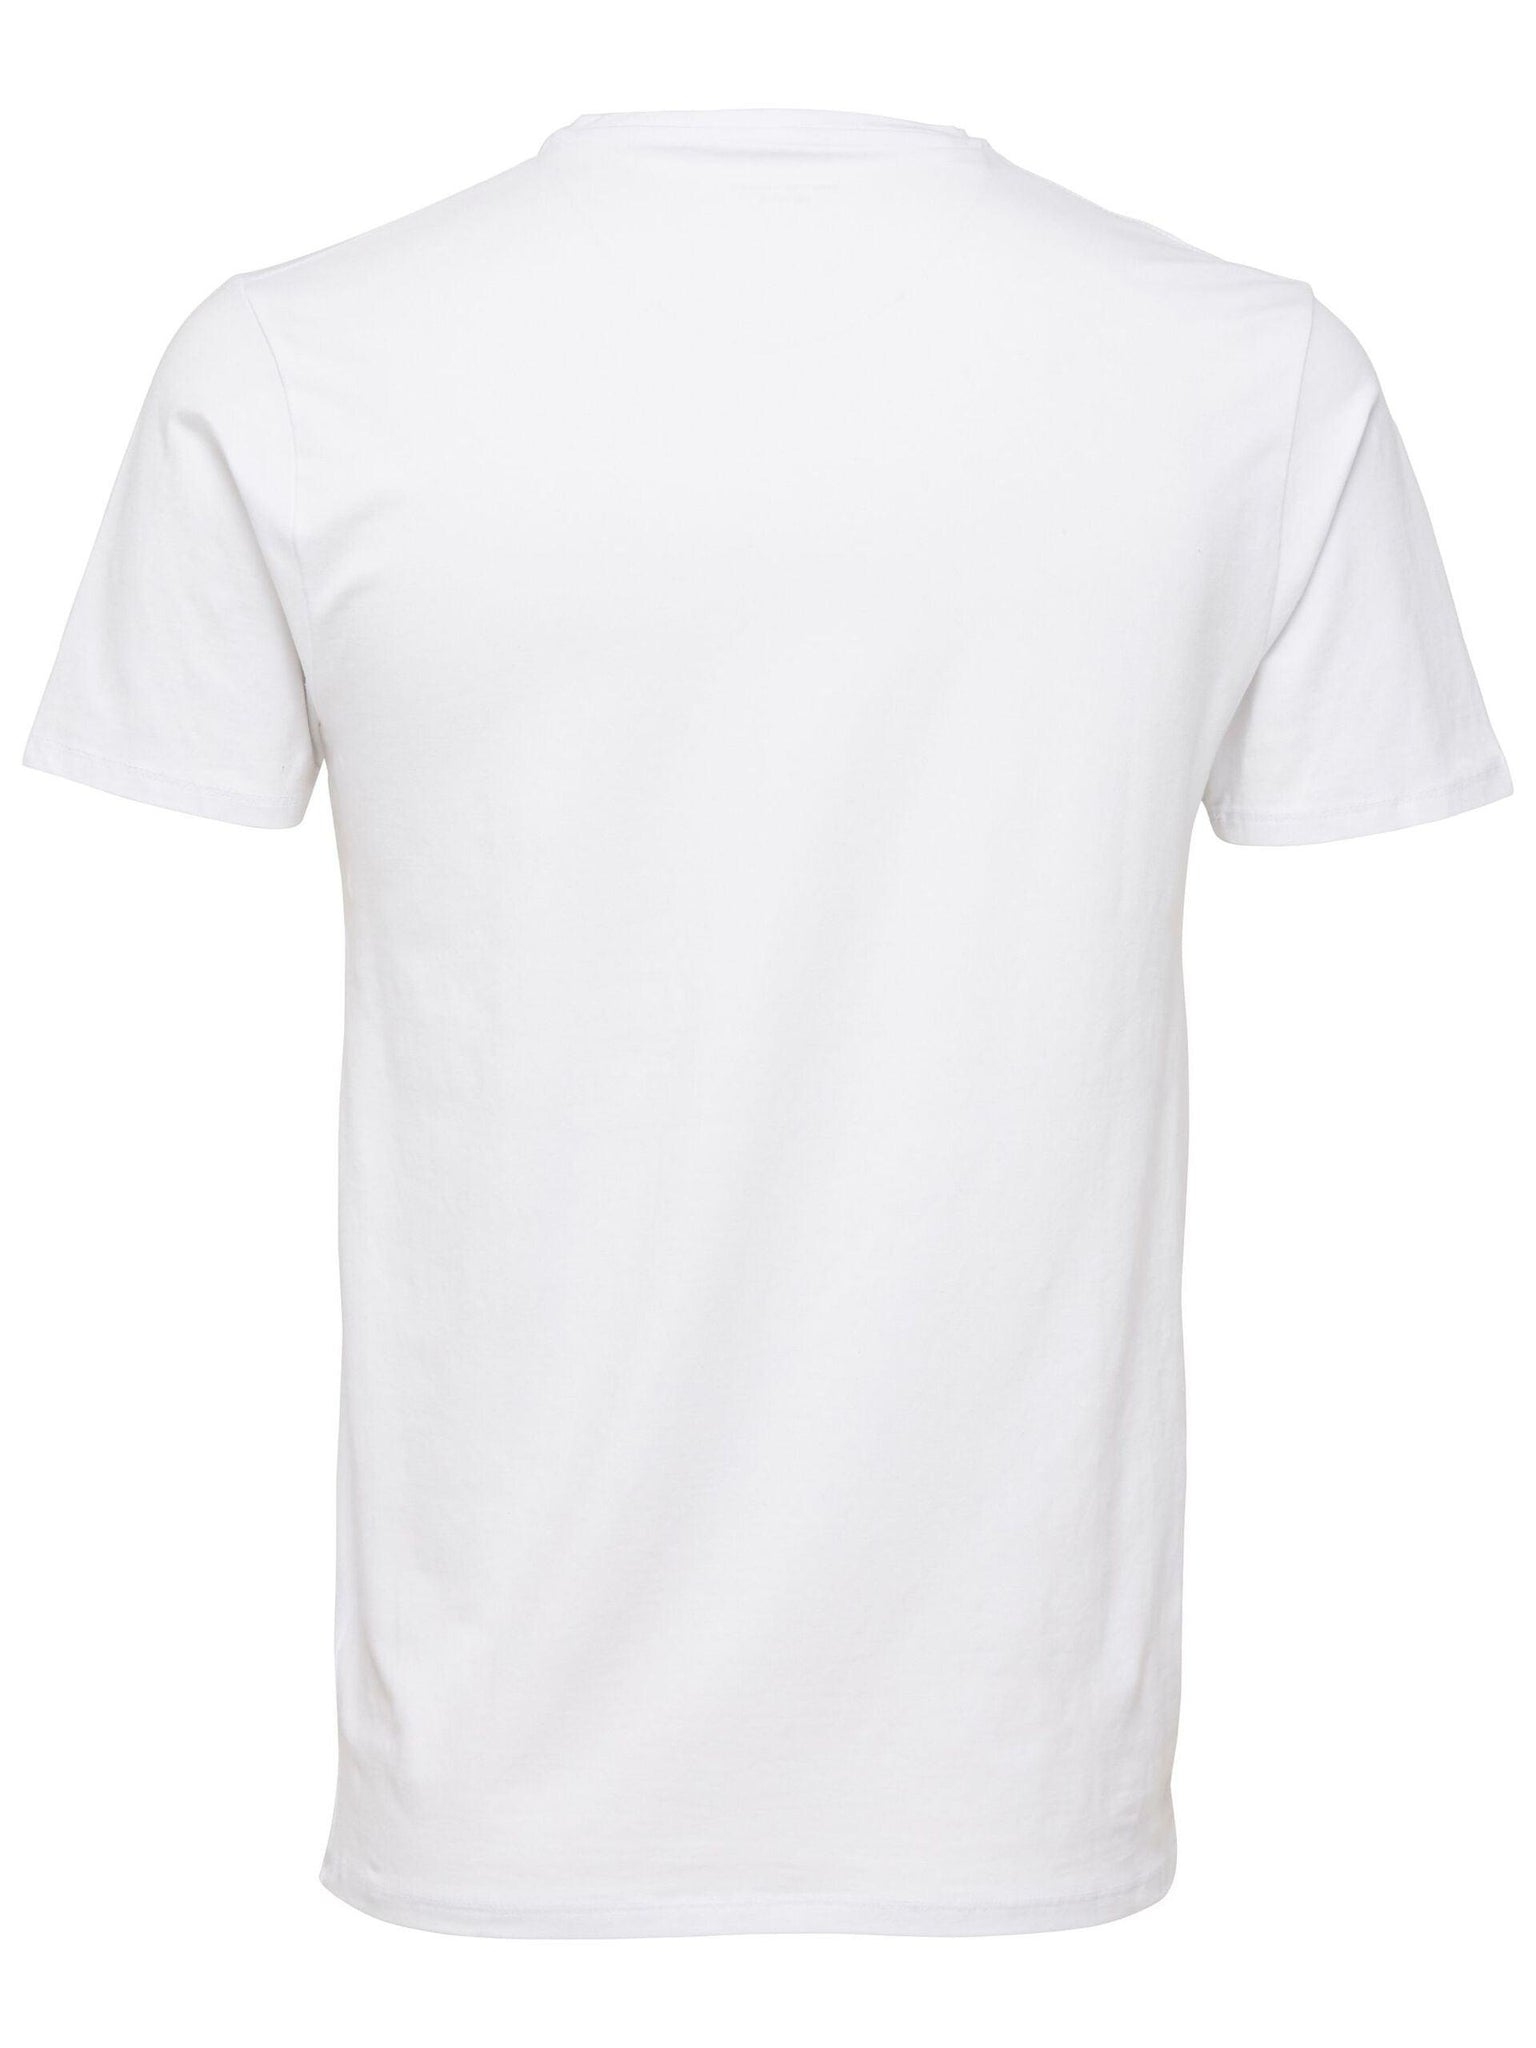 Camiseta New Pima Cuello Pico Bright White - ECRU